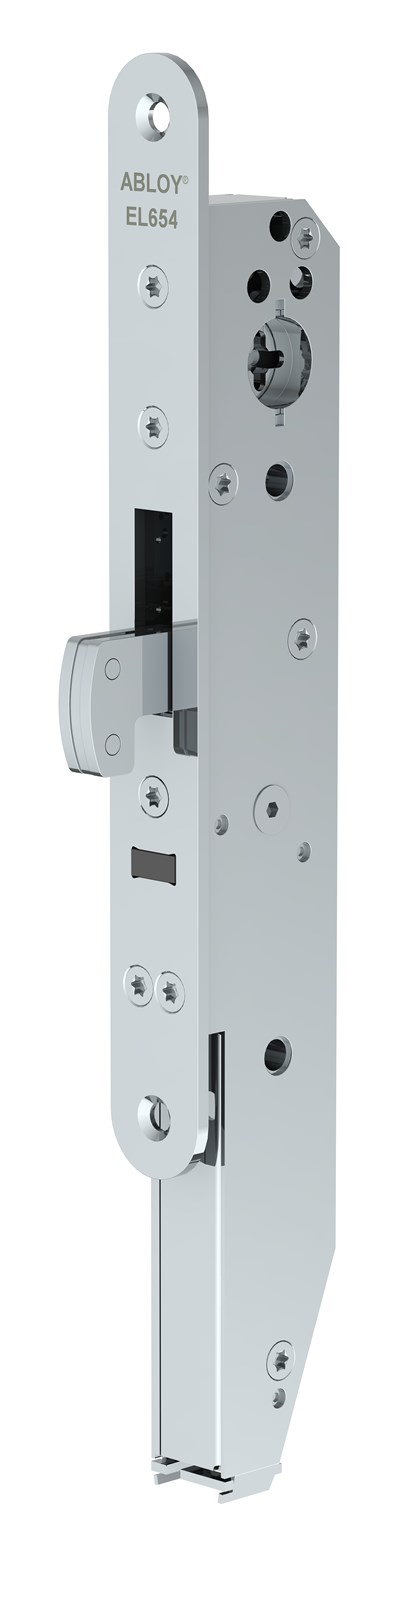 Lock case EL654